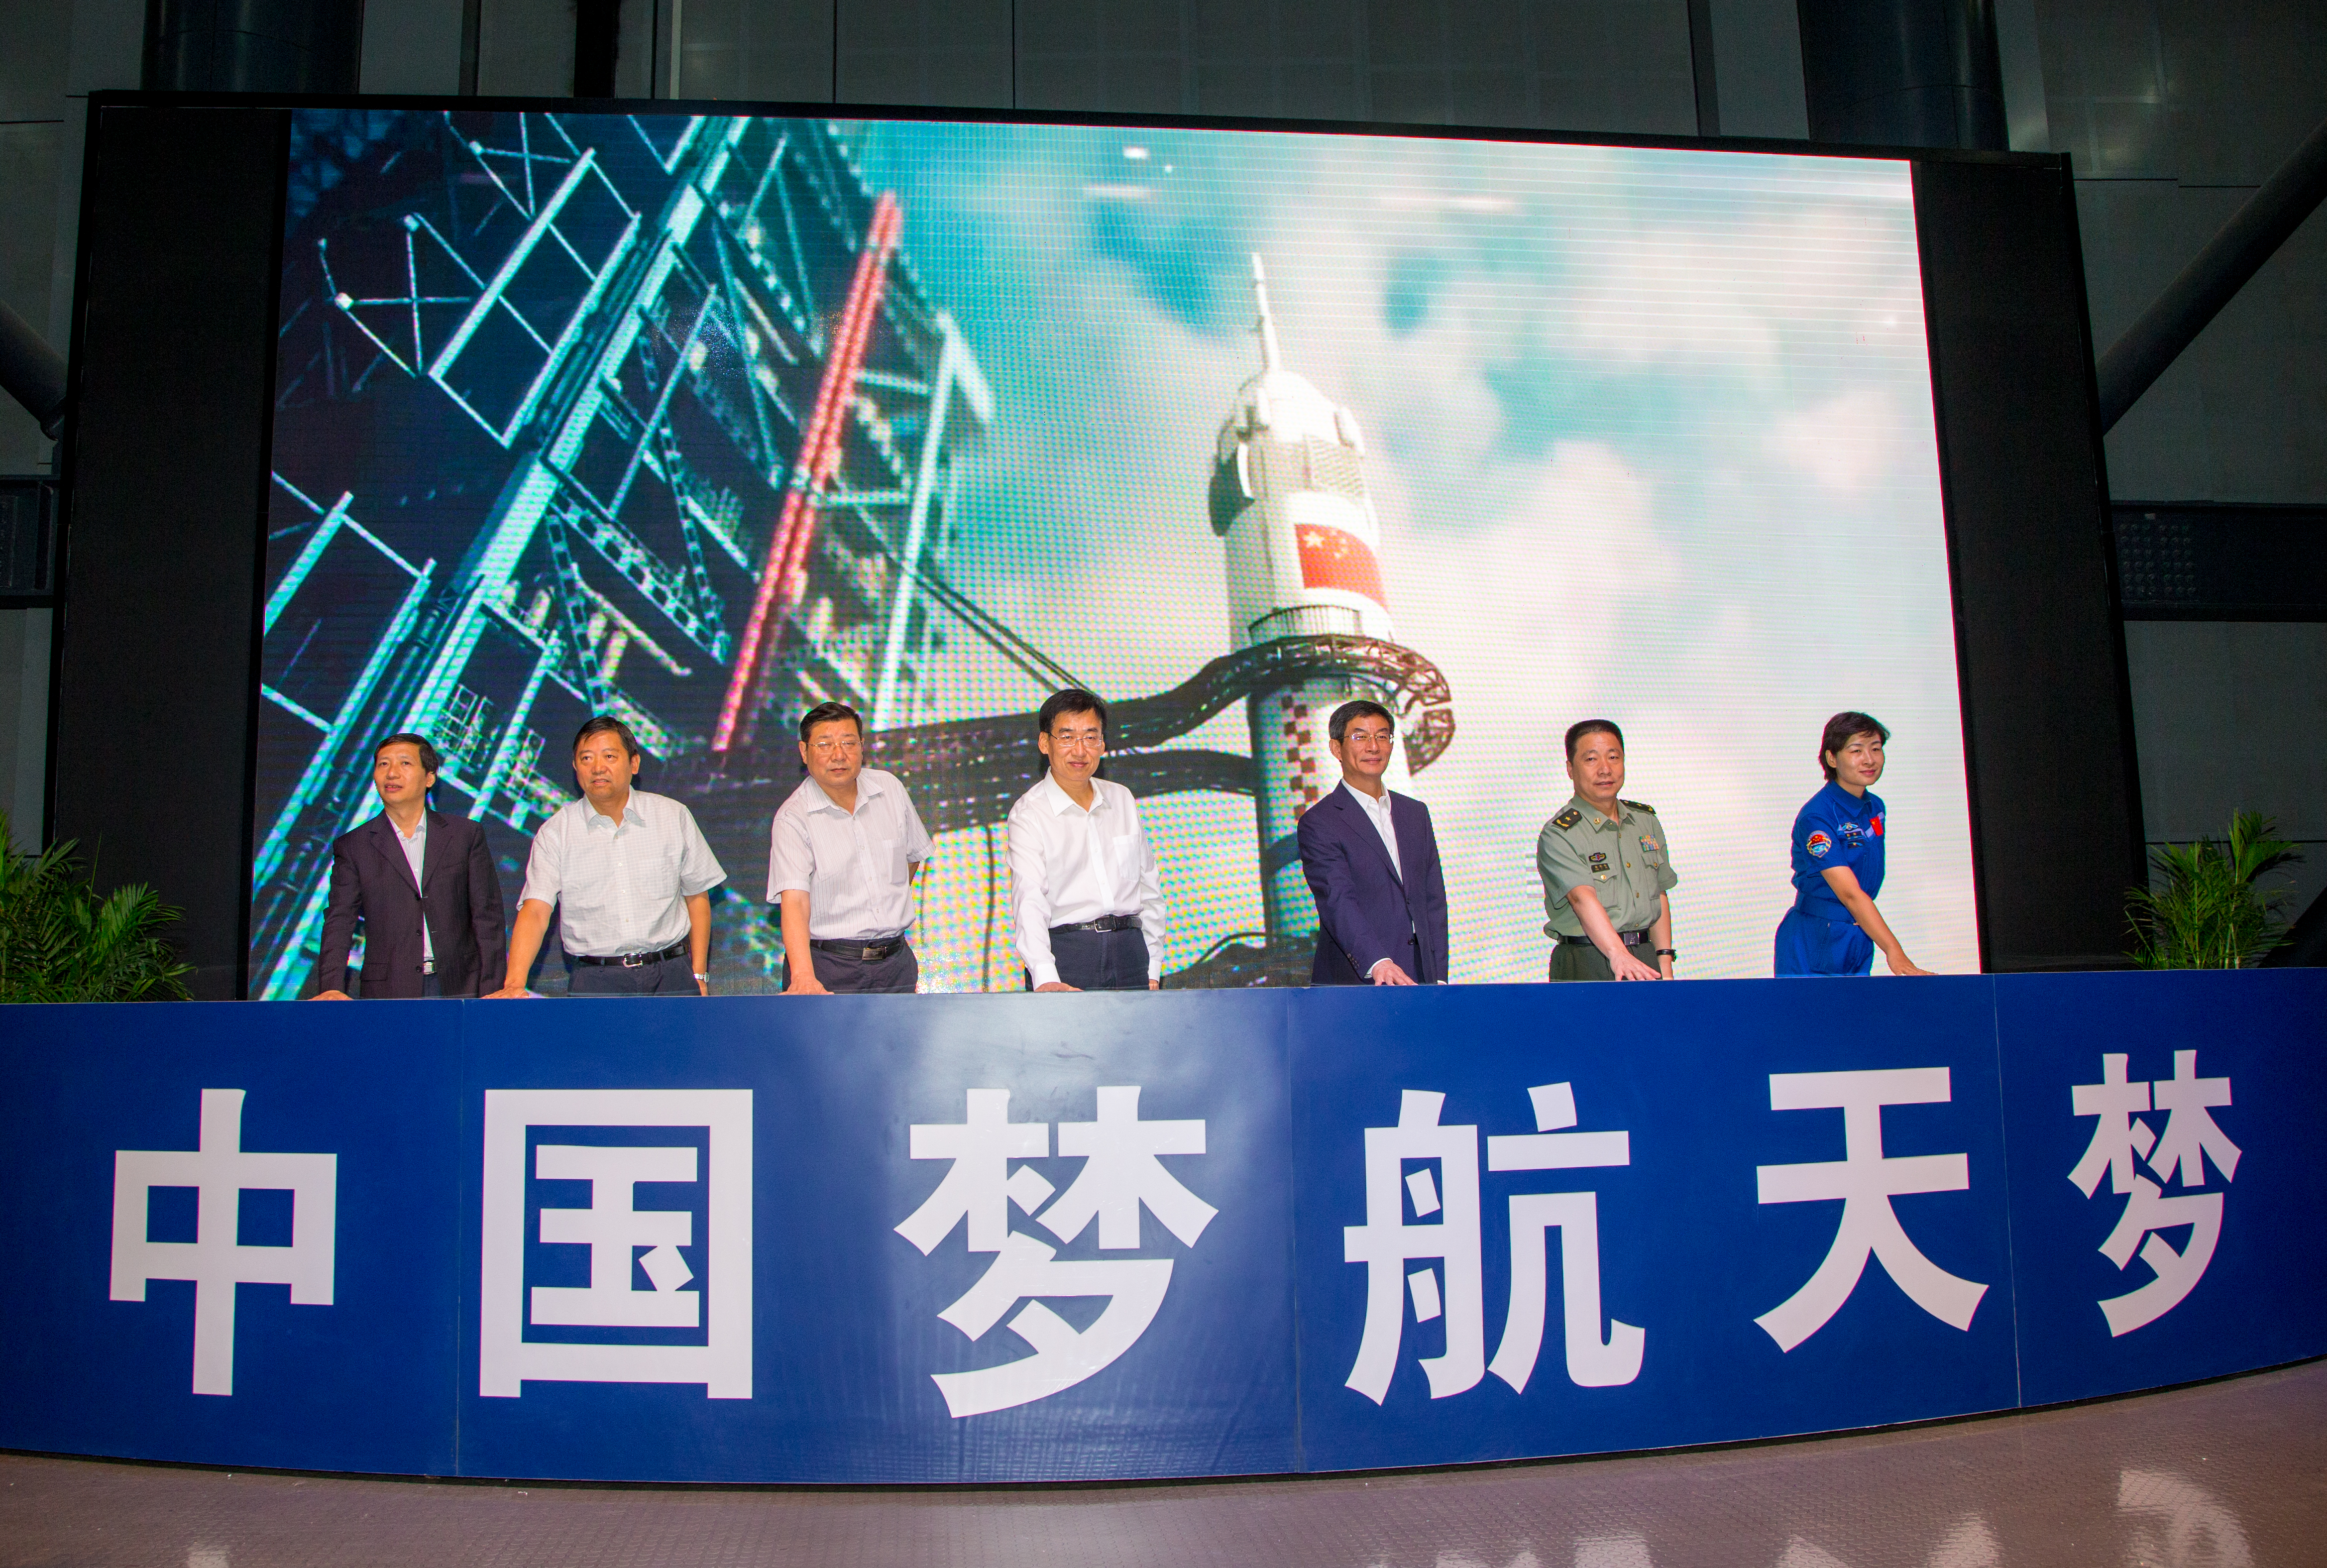 郭广生院长和与会领导、航天员共同宣布展览开幕.jpg